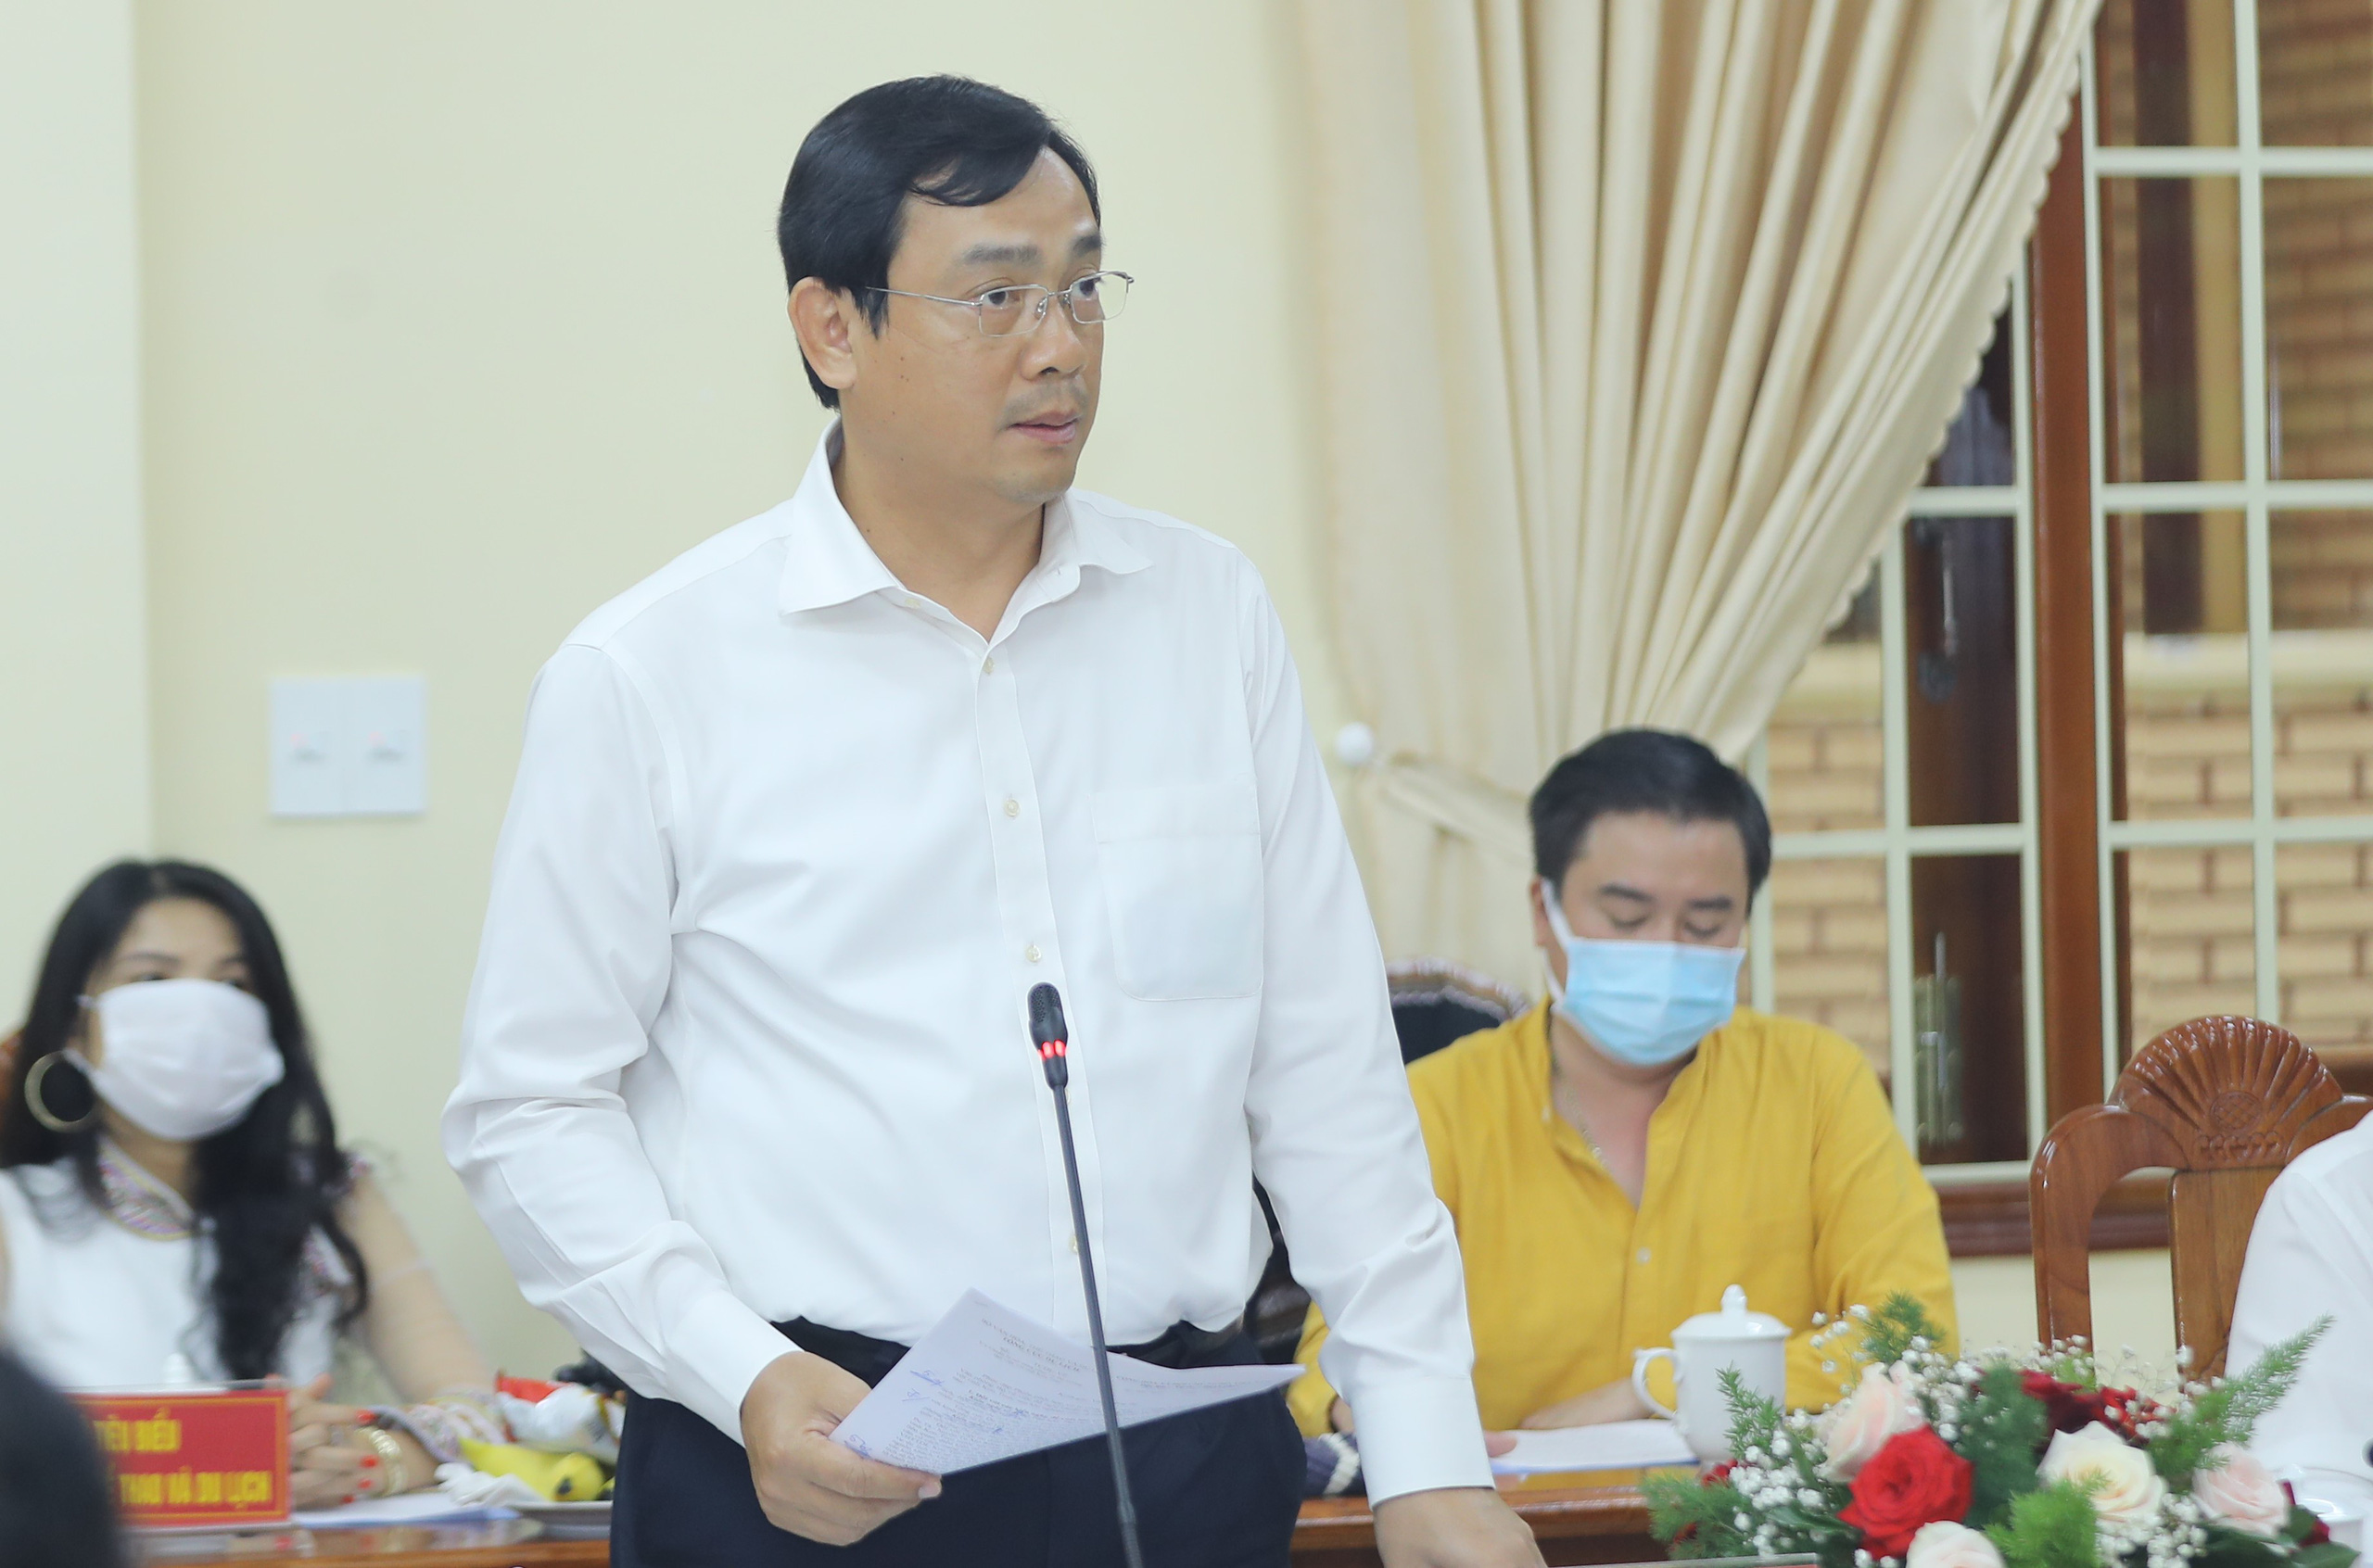 Bộ trưởng Nguyễn Văn Hùng: “Kon Tum có quang cảnh đẹp, sao không mạnh dạn đặt ước mơ trở thành trung tâm hội nghị của khu vực miền Trung-Tây Nguyên” - Ảnh 5.